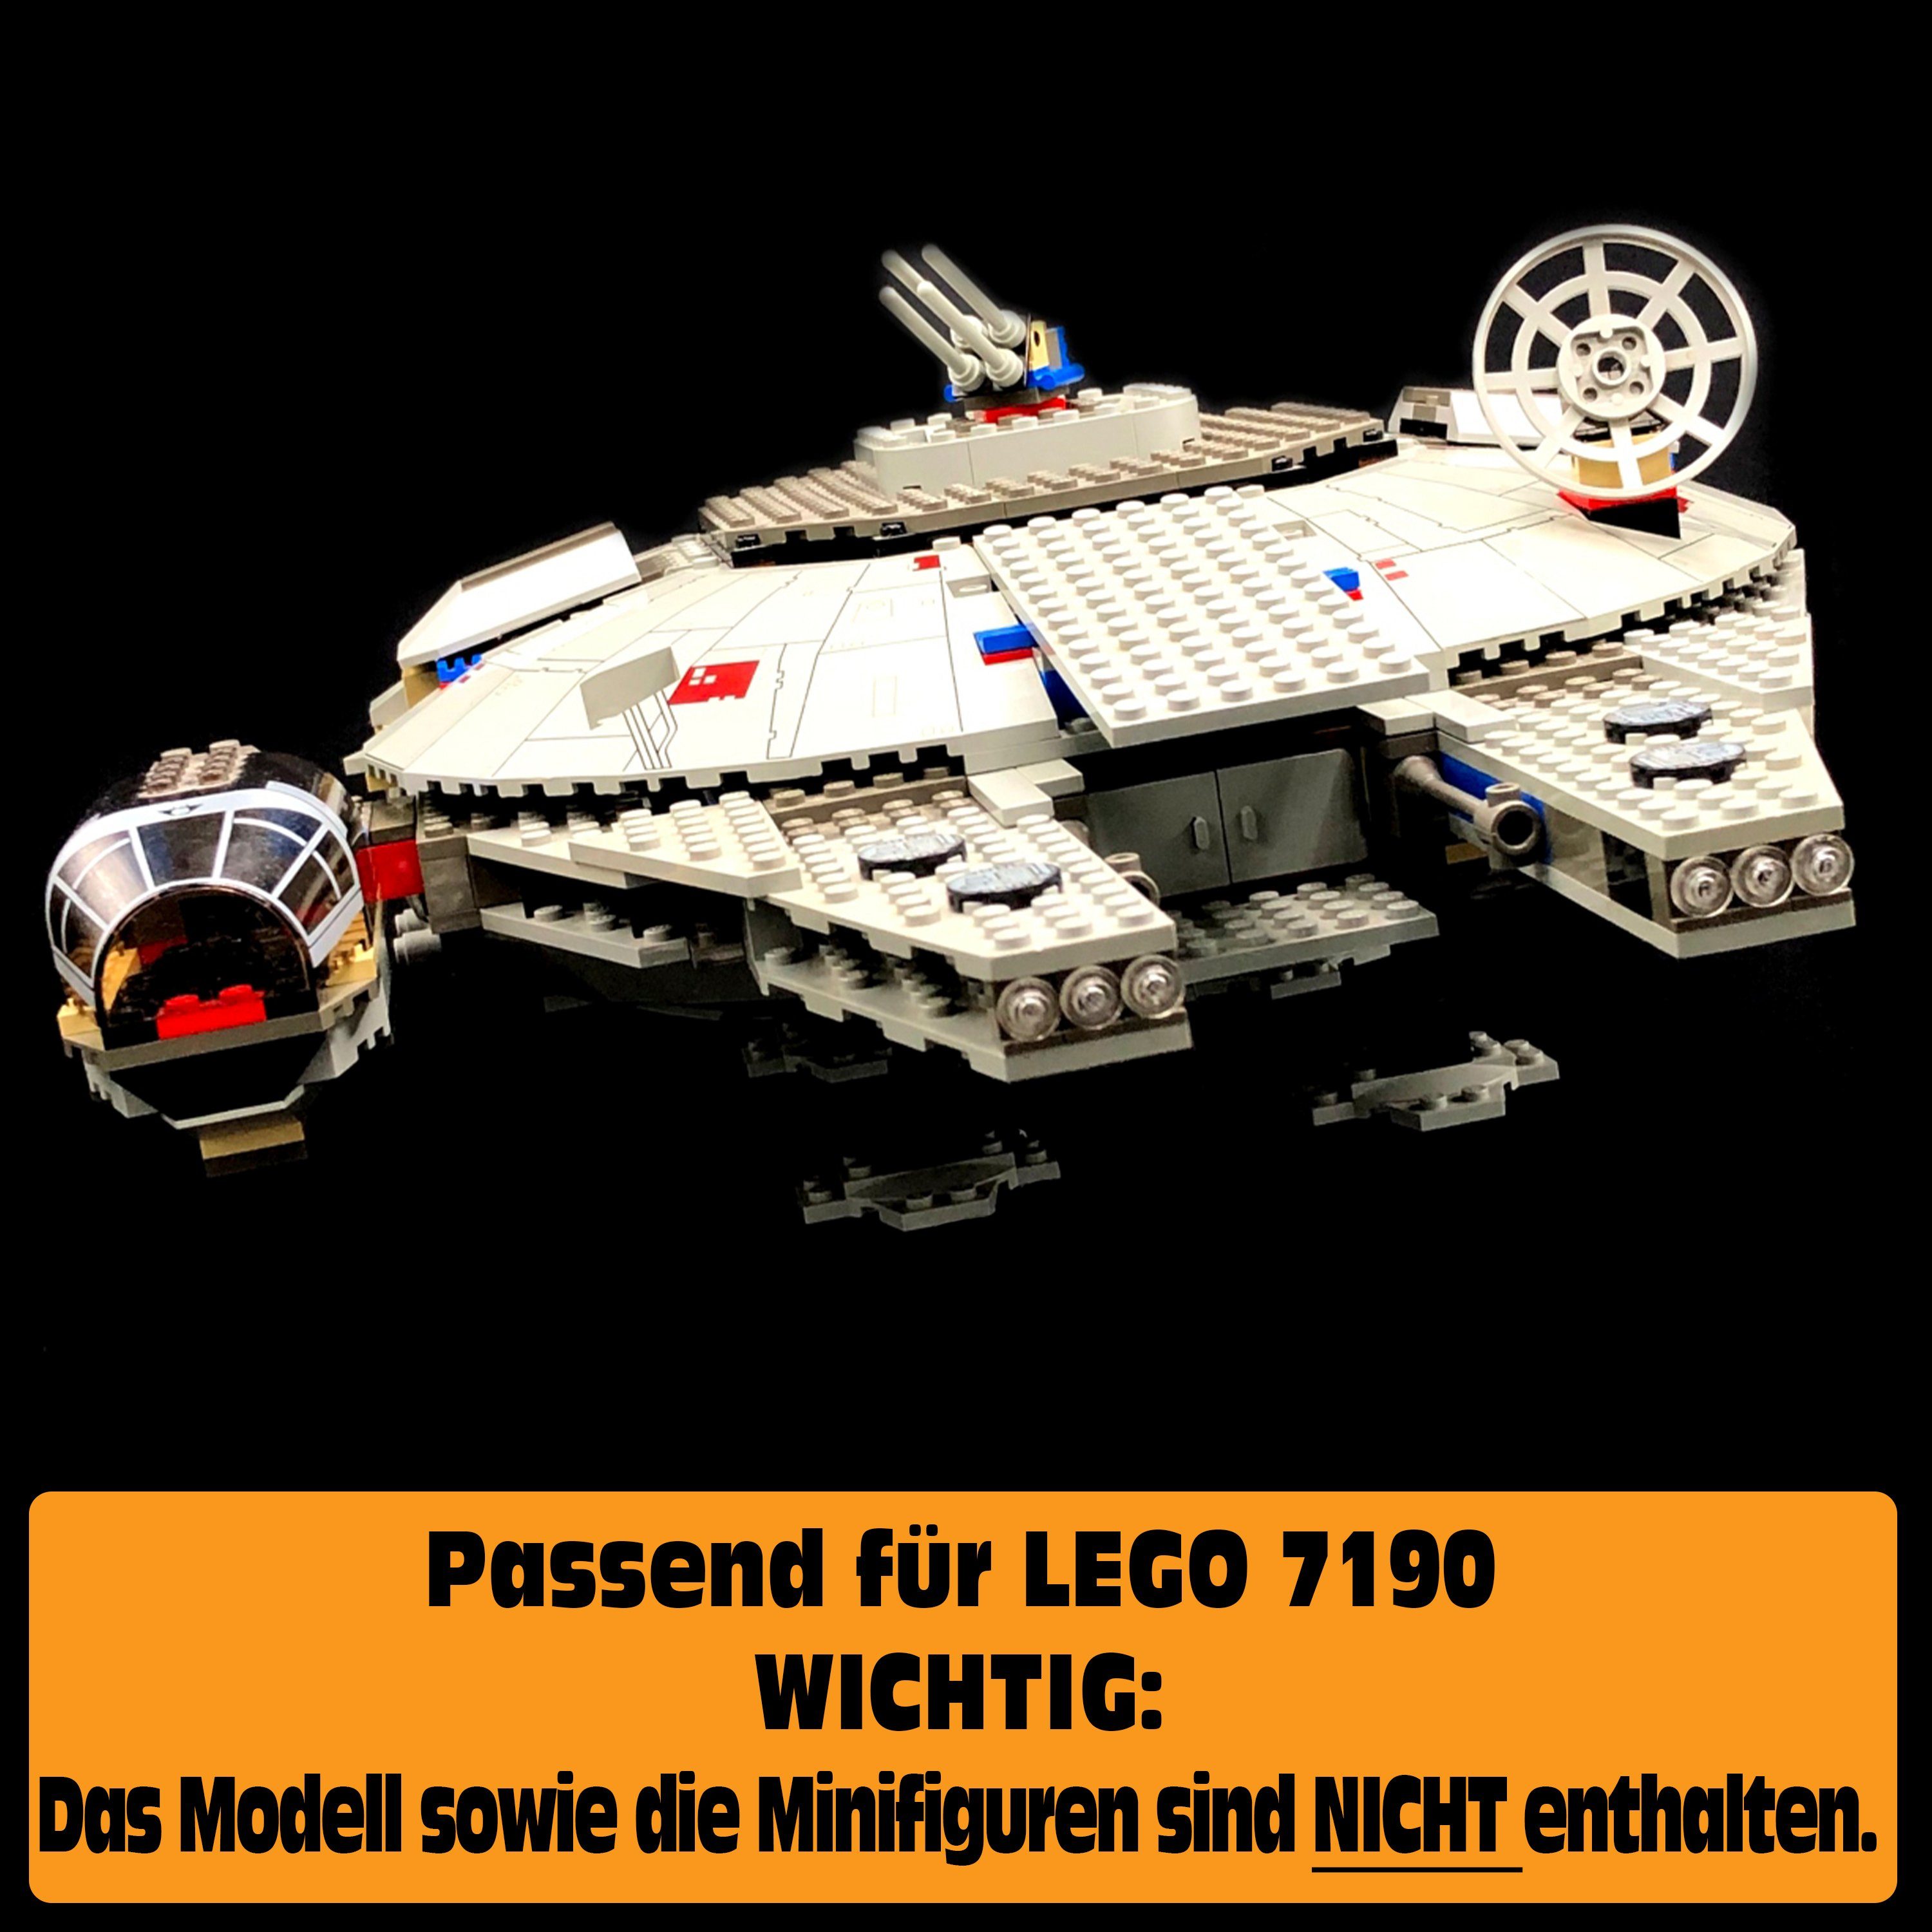 7190 LEGO Falcon Made AREA17 Stand Display 100% selbst Standfuß für Millennium in Germany Acryl zusammenbauen), (zum